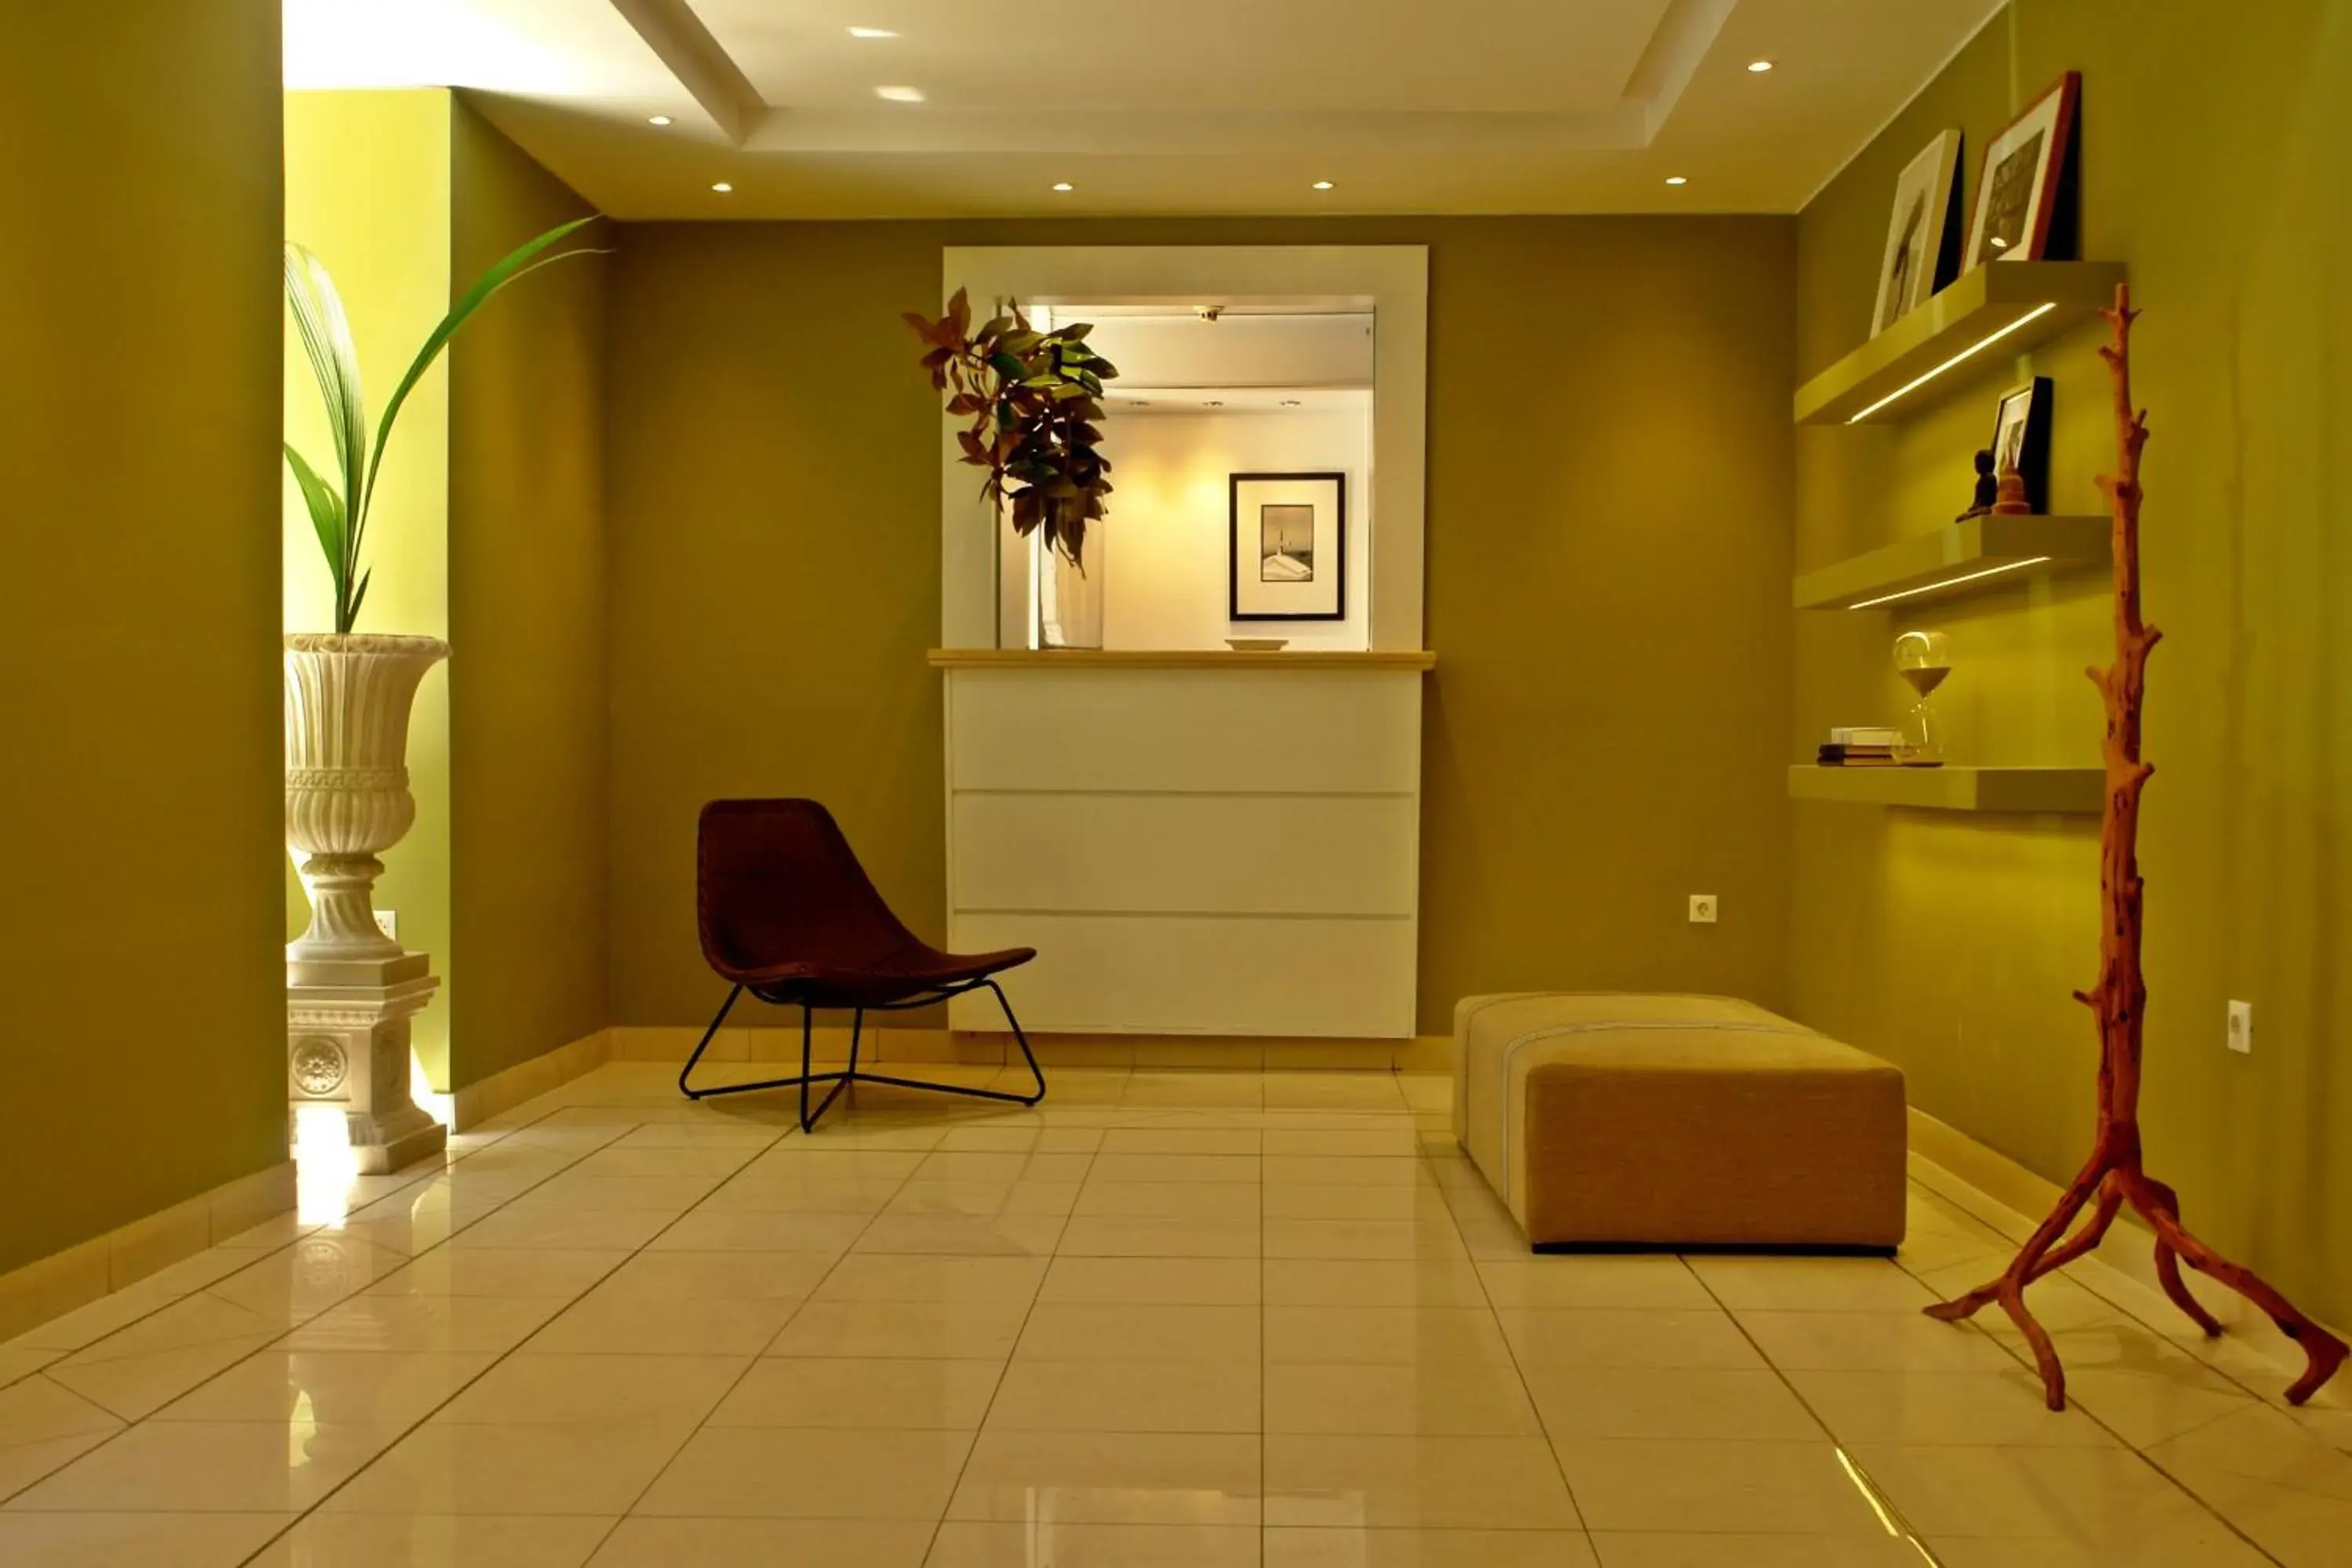 Lobby or reception, Lobby/Reception in Semeli Hotel